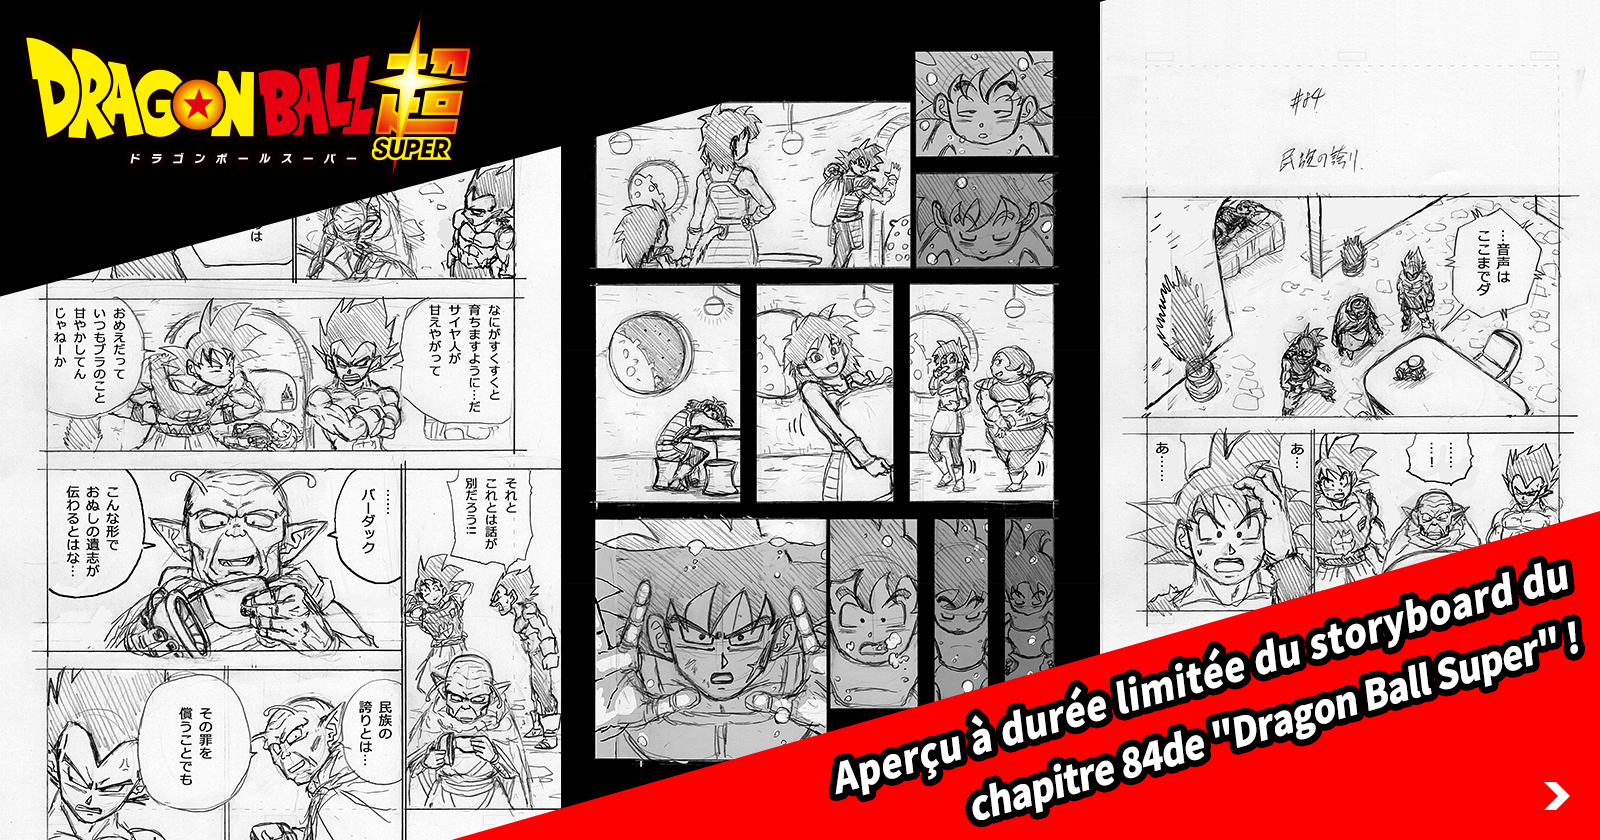 Aperçu à durée limitée du storyboard de Dragon Ball Super Chapter 84 ! Obtenez un aperçu de la sortie du chapitre dans l'édition de juillet surdimensionnée de V Jump !